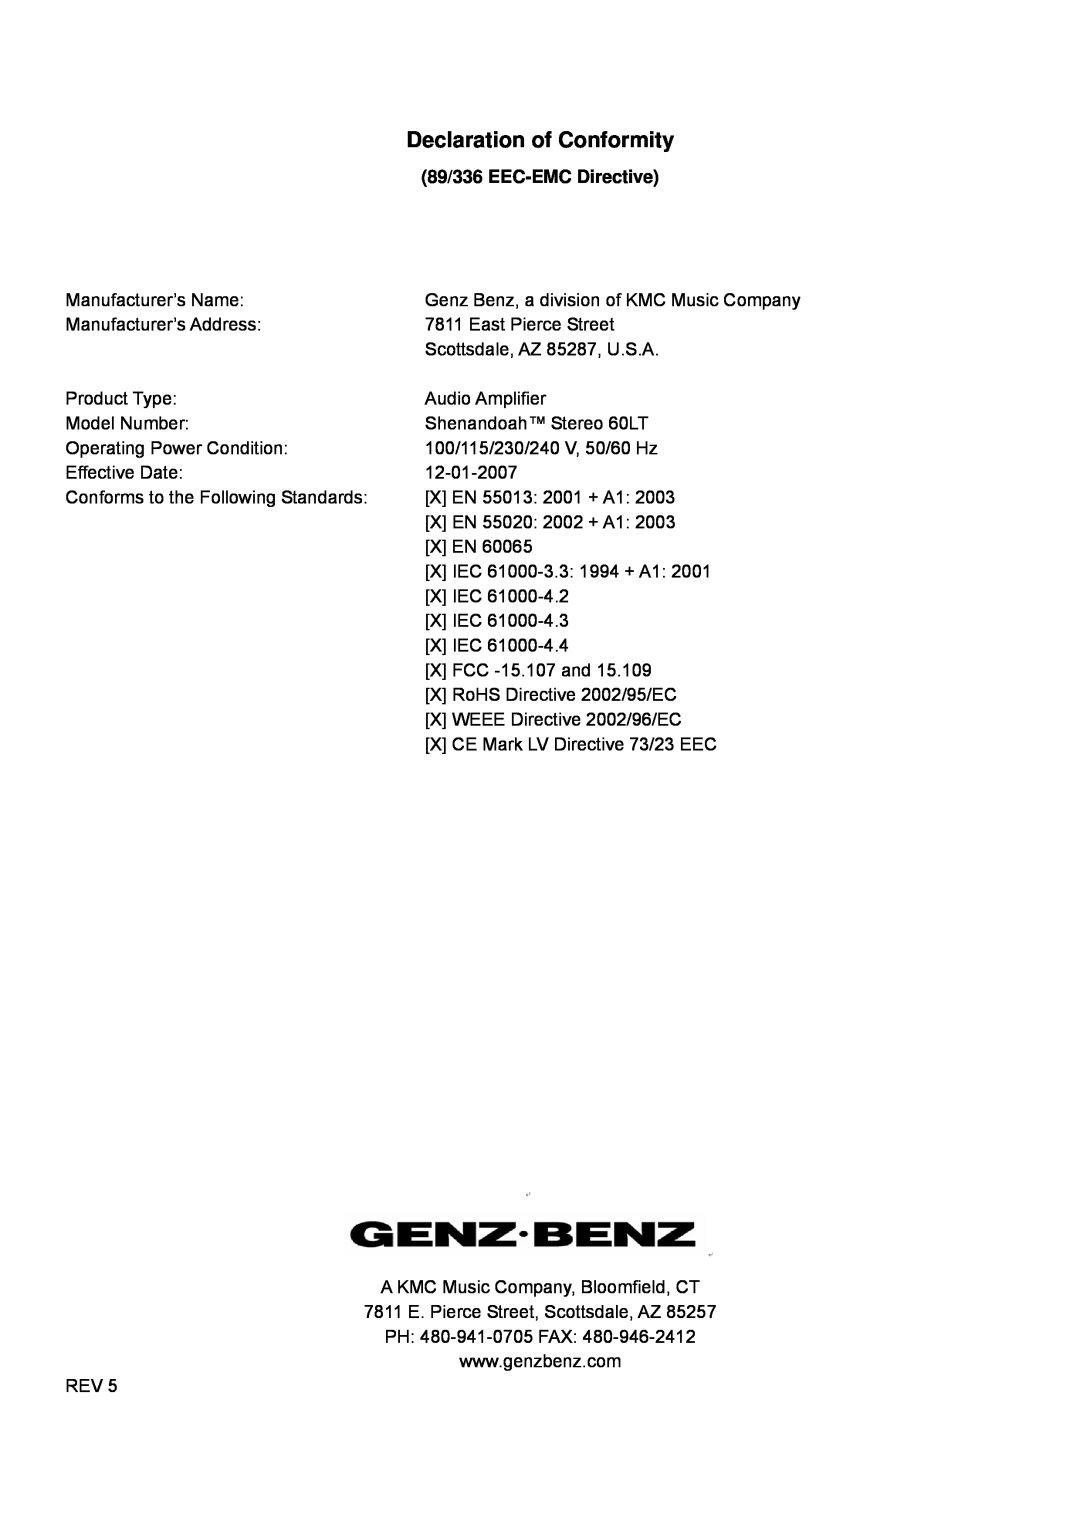 Genz-Benz 60LT owner manual Declaration of Conformity, 89/336 EEC-EMCDirective 